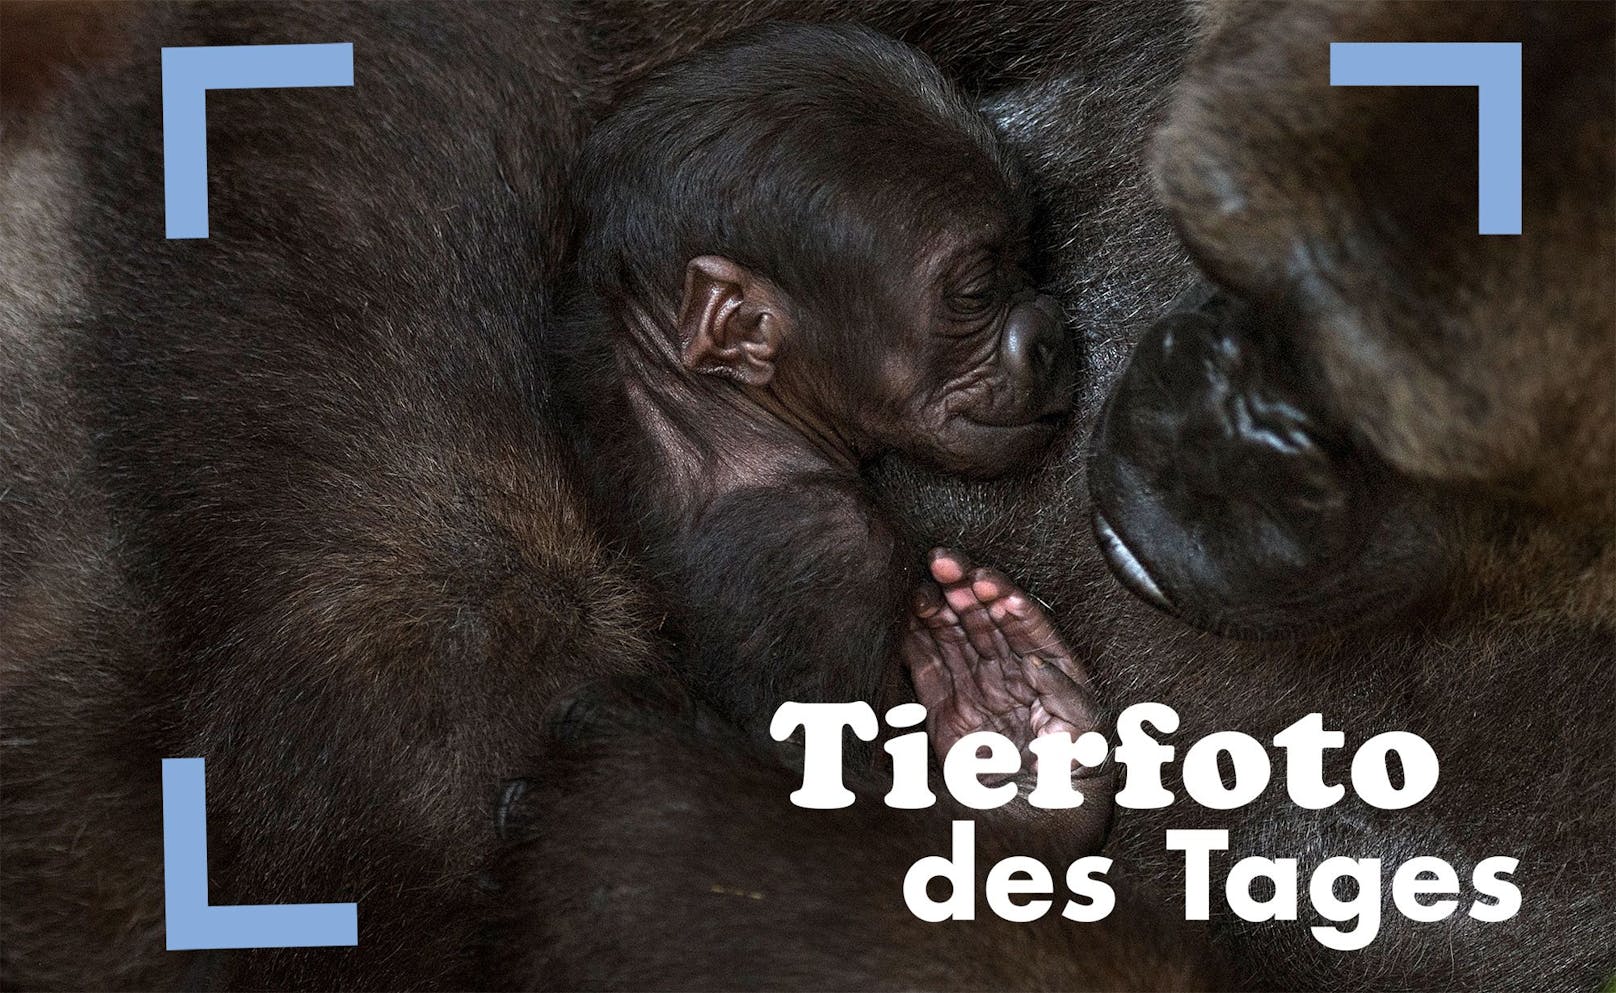 Mutterliebe: im Bioparc in Fuengirola wird gerade ein neugeborenes Gorillababy liebevoll umsorgt. 